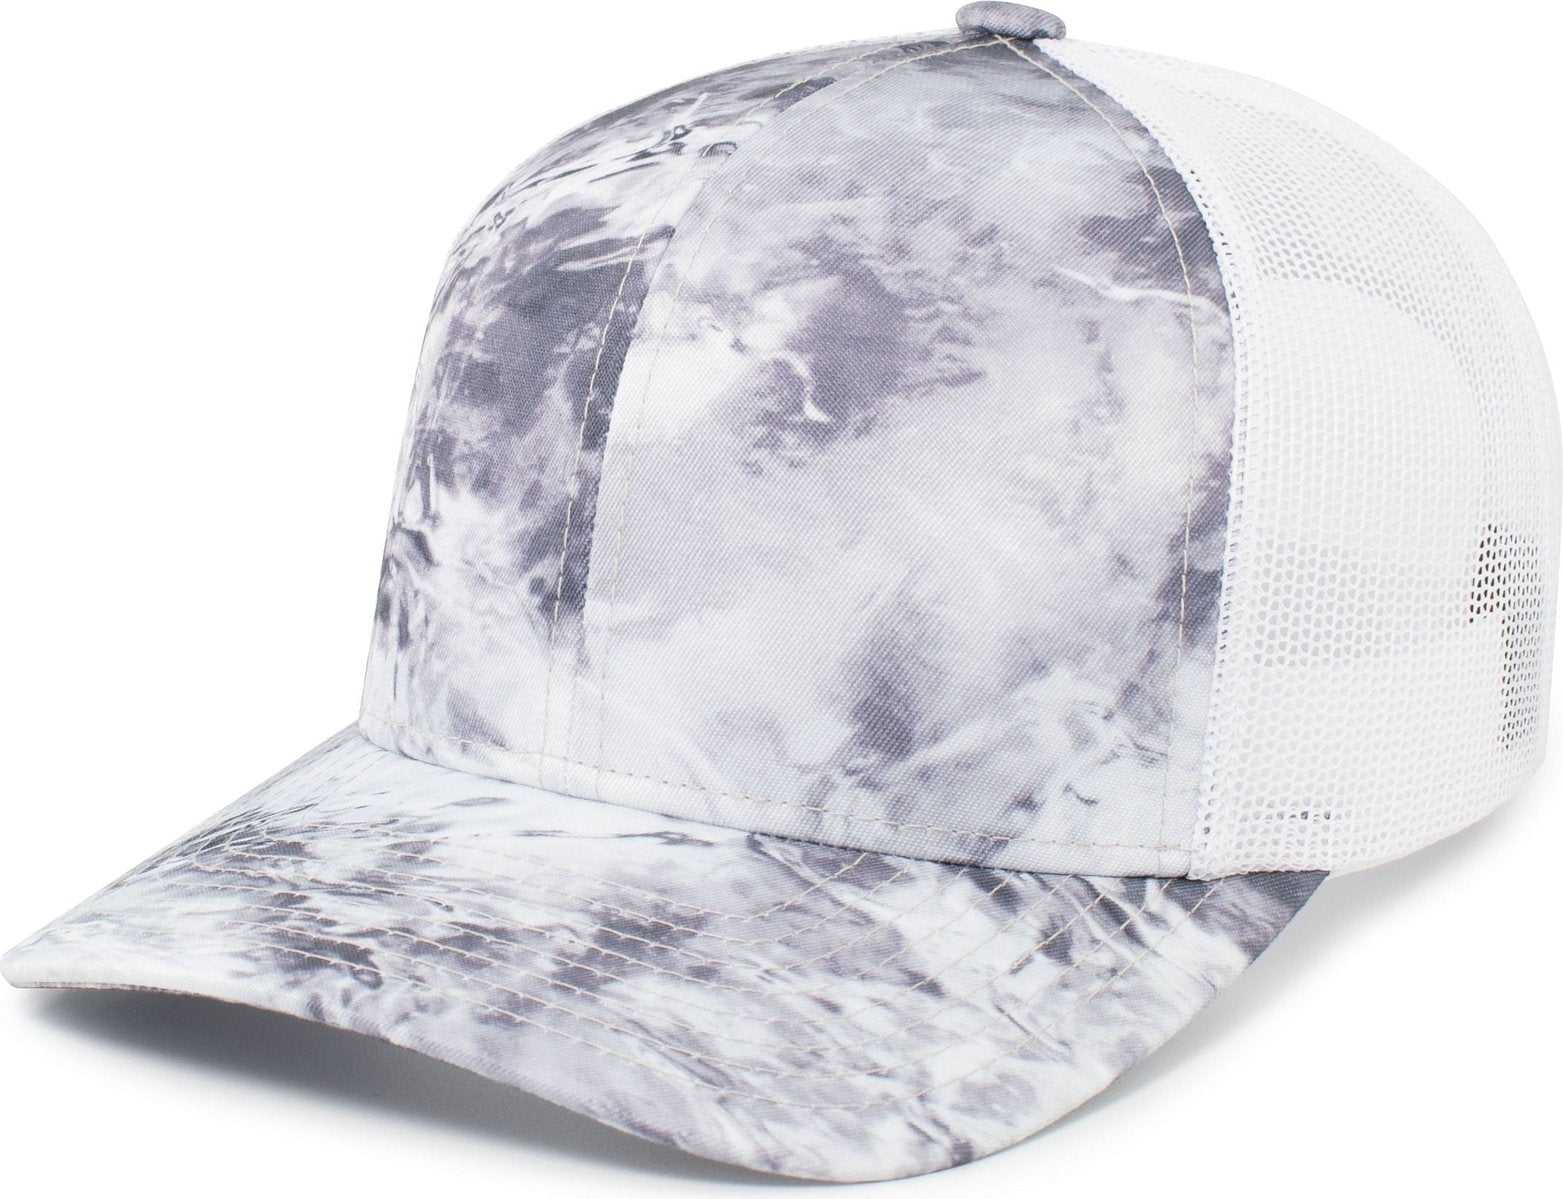 Pacific Headwear 107C Mossy Oak Trucker Snapback - Wakeform Hailstone White - HIT a Double